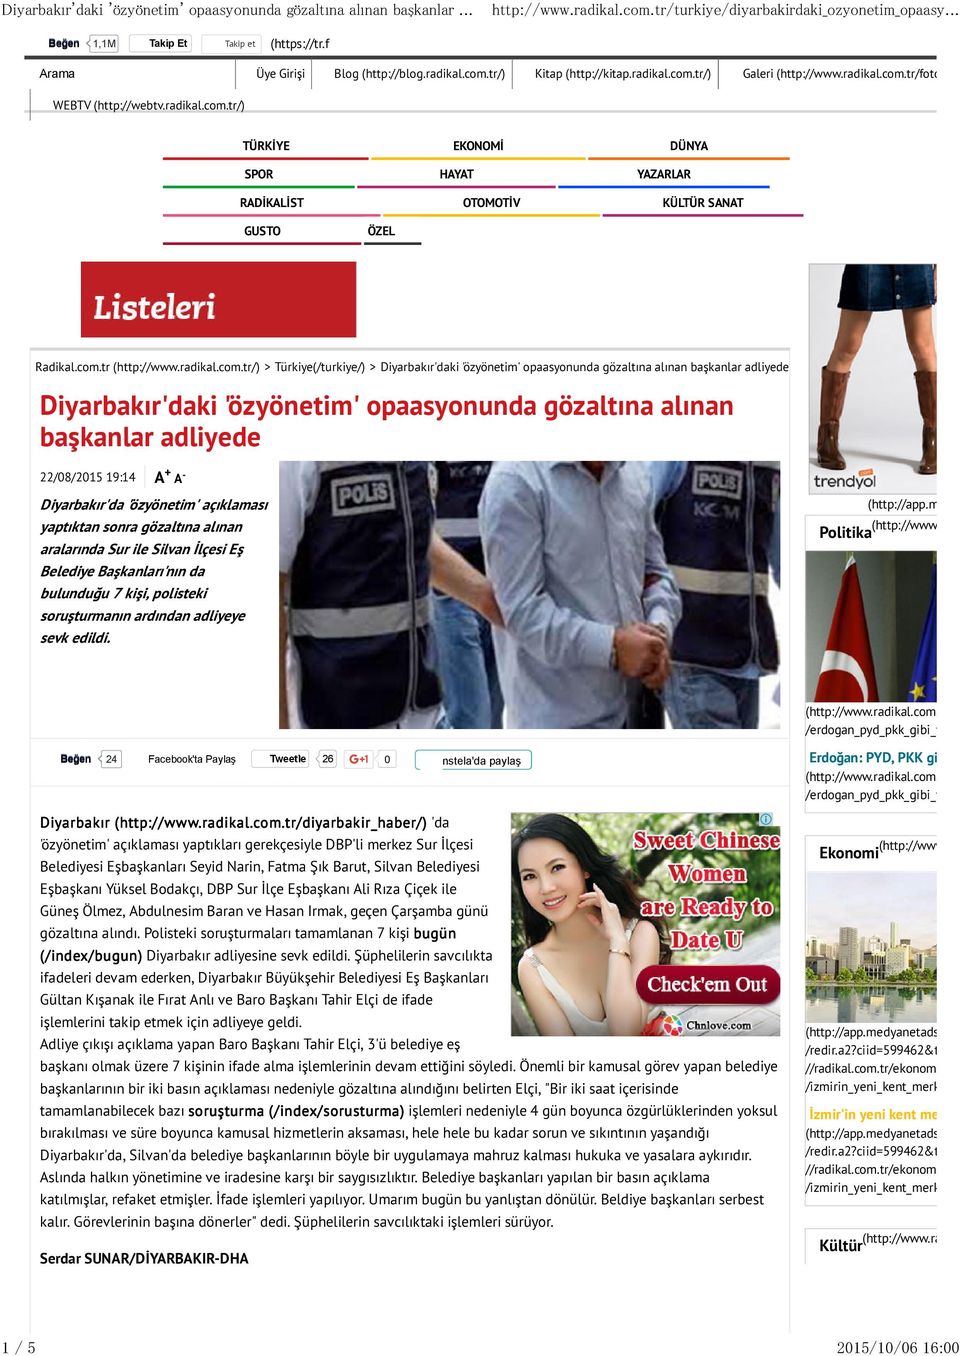 19:14 A + A - Diyarbakır'da 'özyönetim' açıklaması yaptıktan sonra gözaltına alınan aralarında Sur ile Silvan Đlçesi Eş Belediye Başkanları'nın da bulunduğu 7 kişi, polisteki soruşturmanın ardından